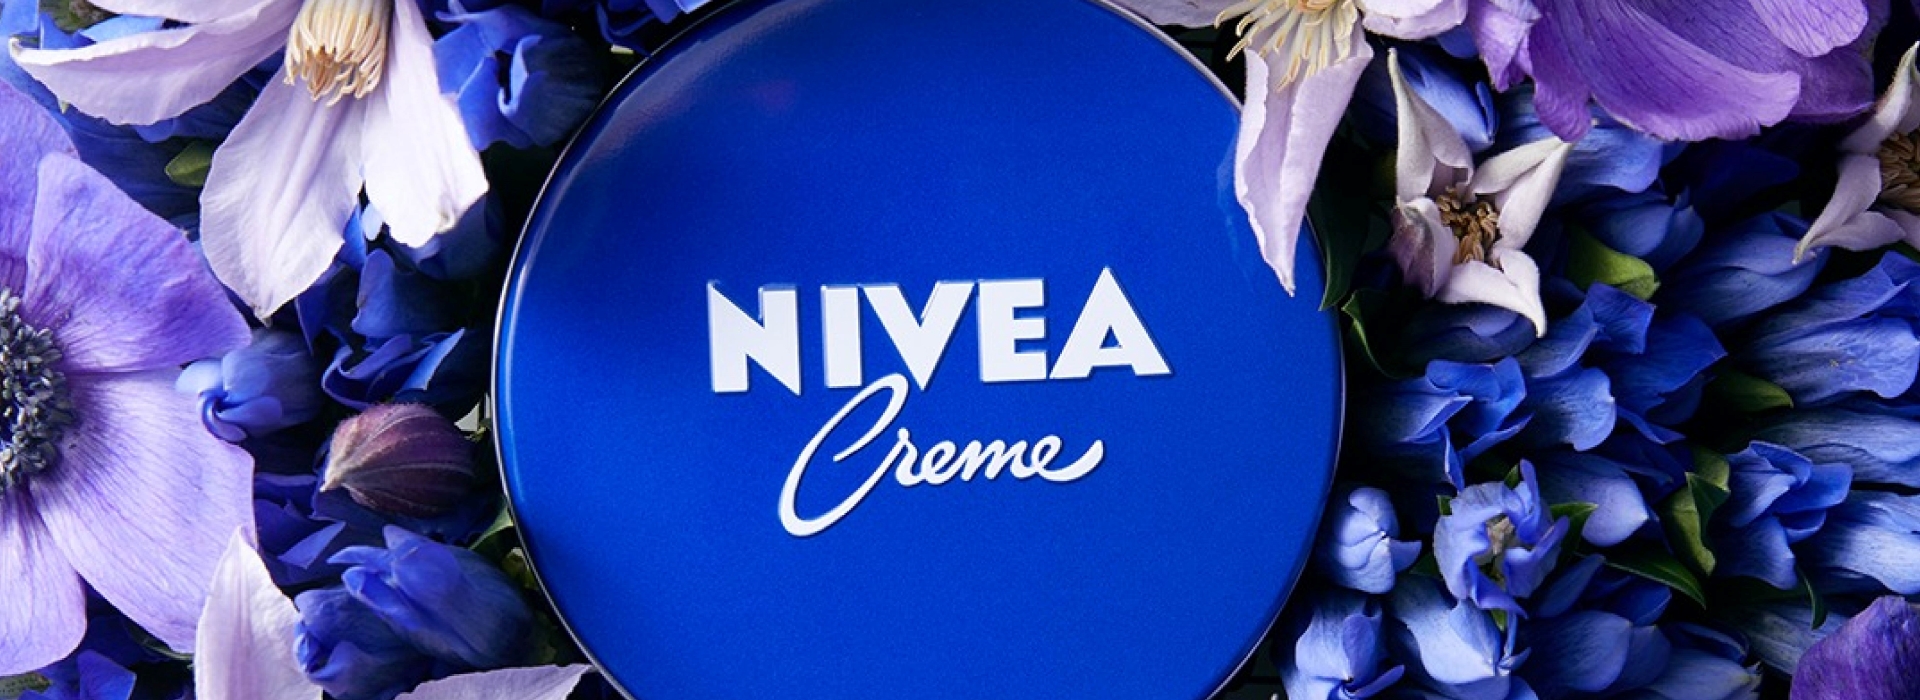 Nivea - Crème